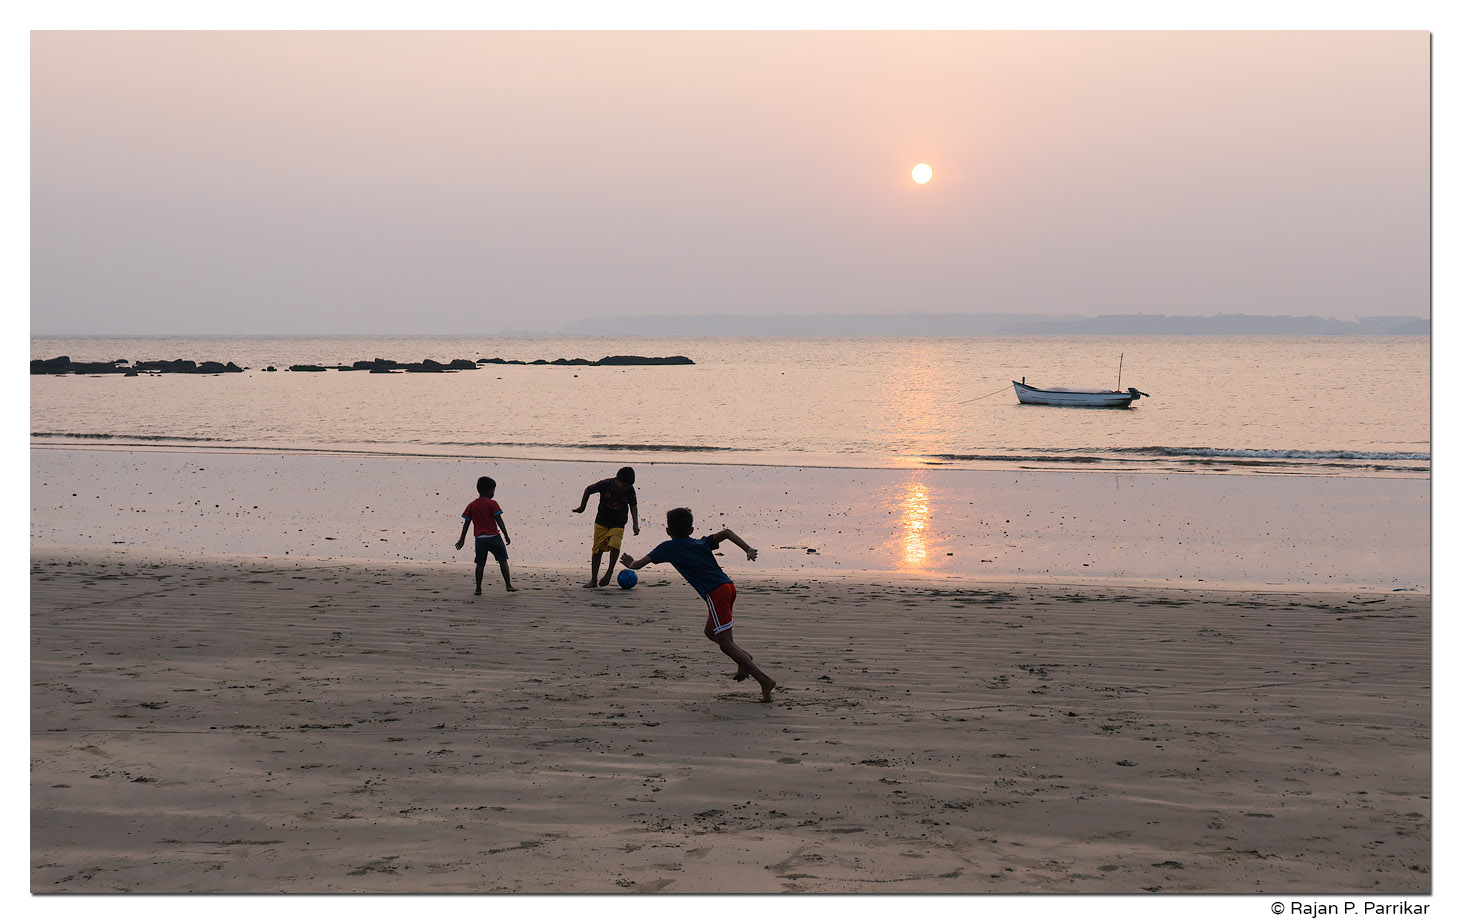 Football on the beach, Siridona, Goa